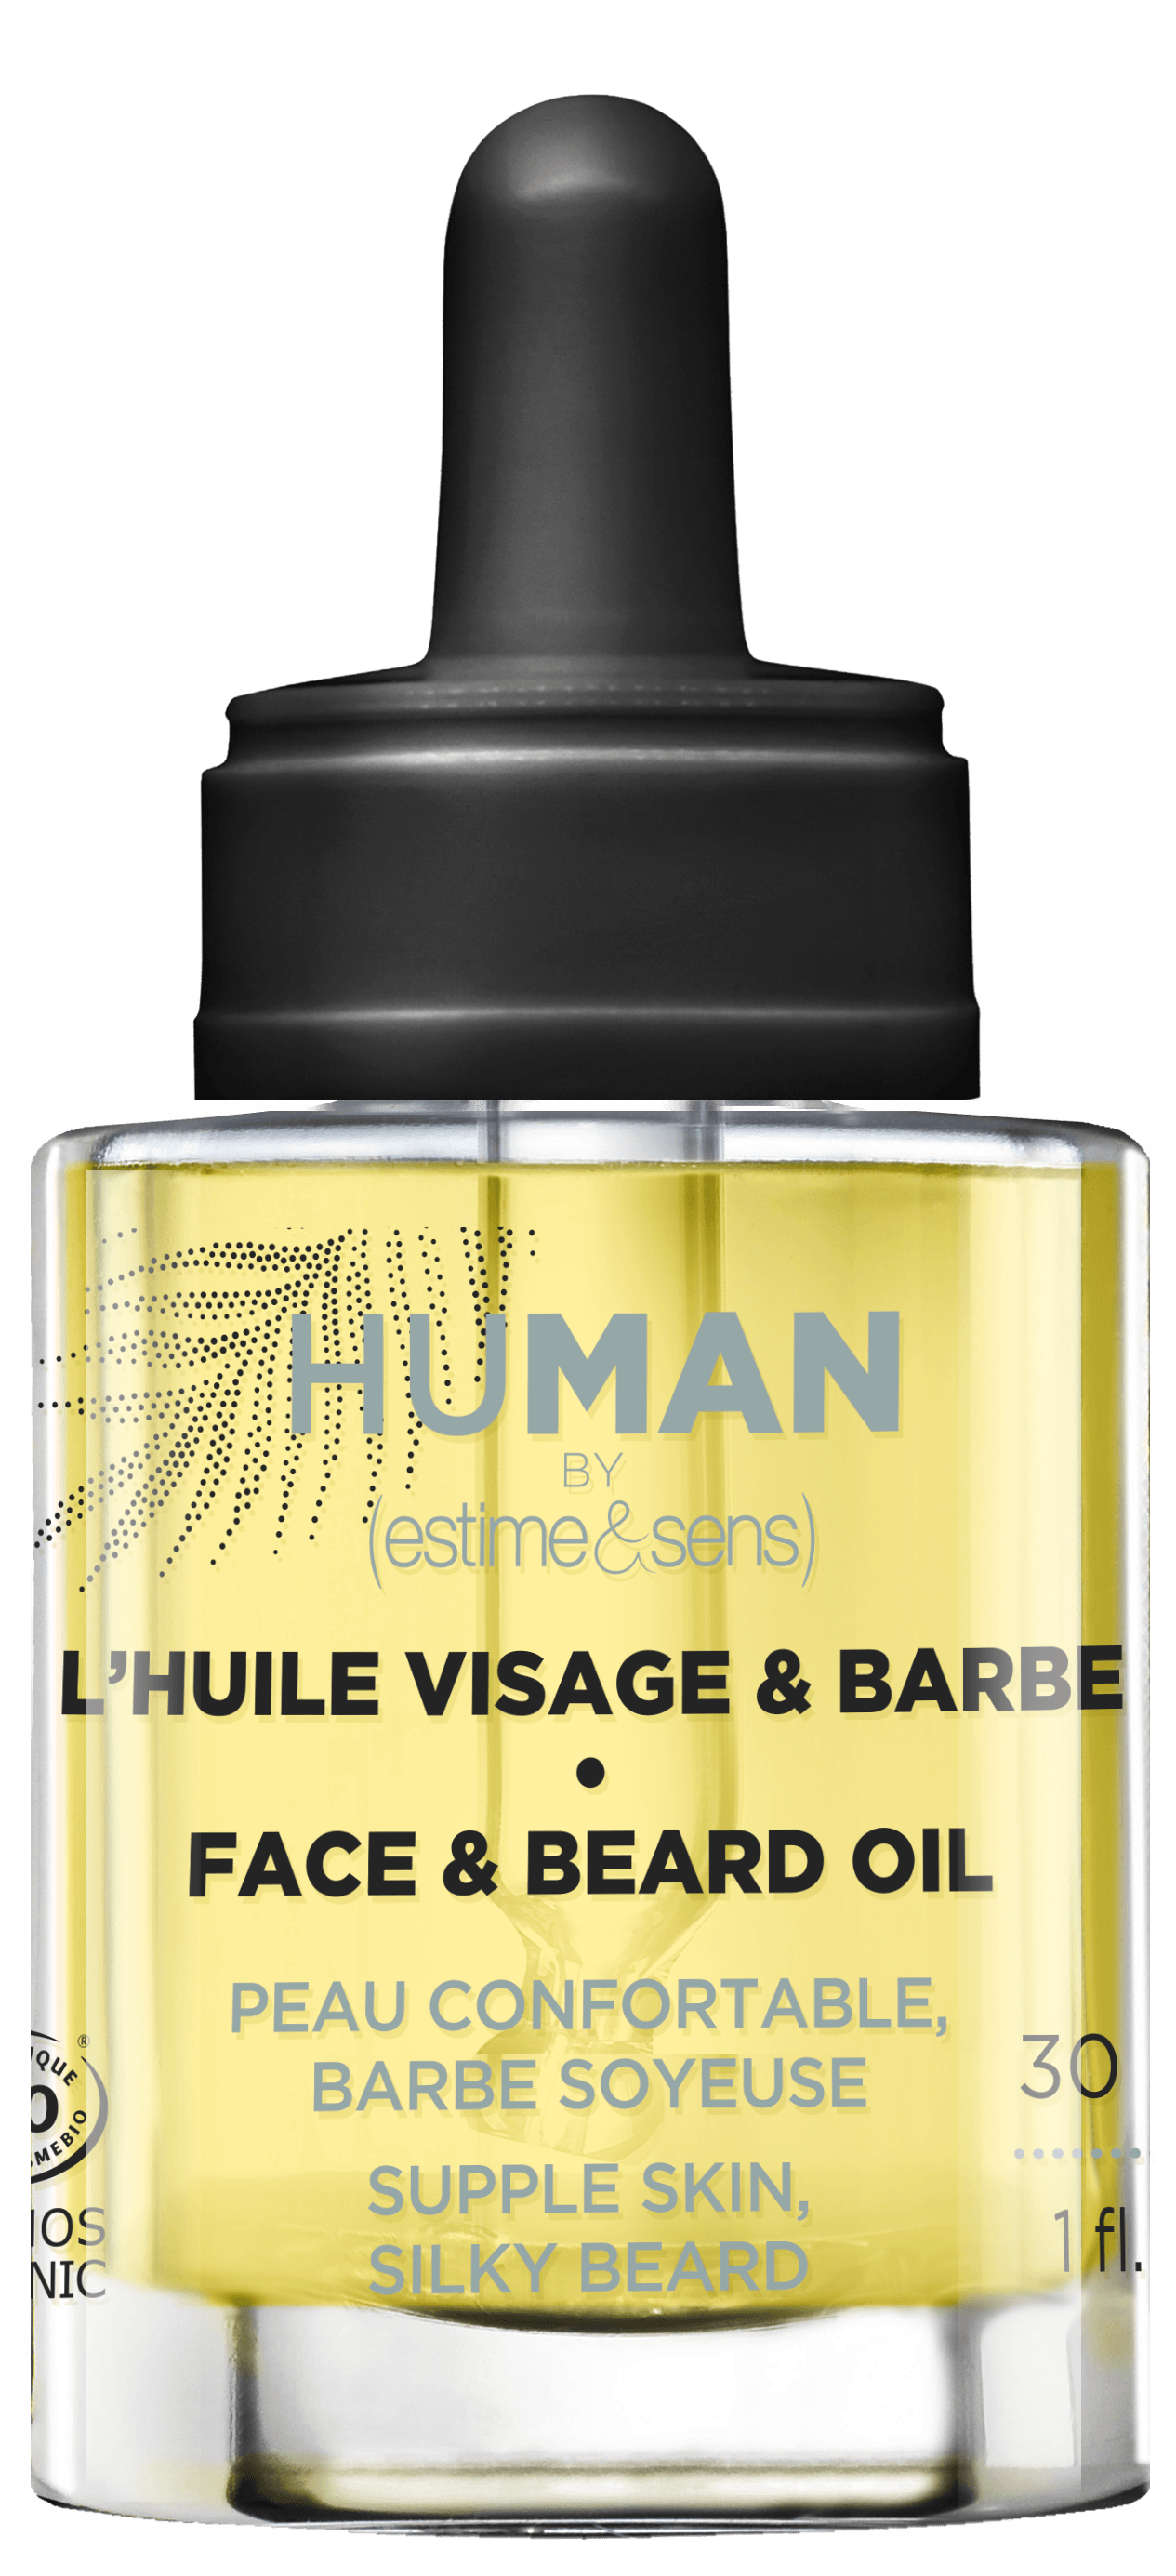 Gesichts- und Bart-Öl human by estime & sens